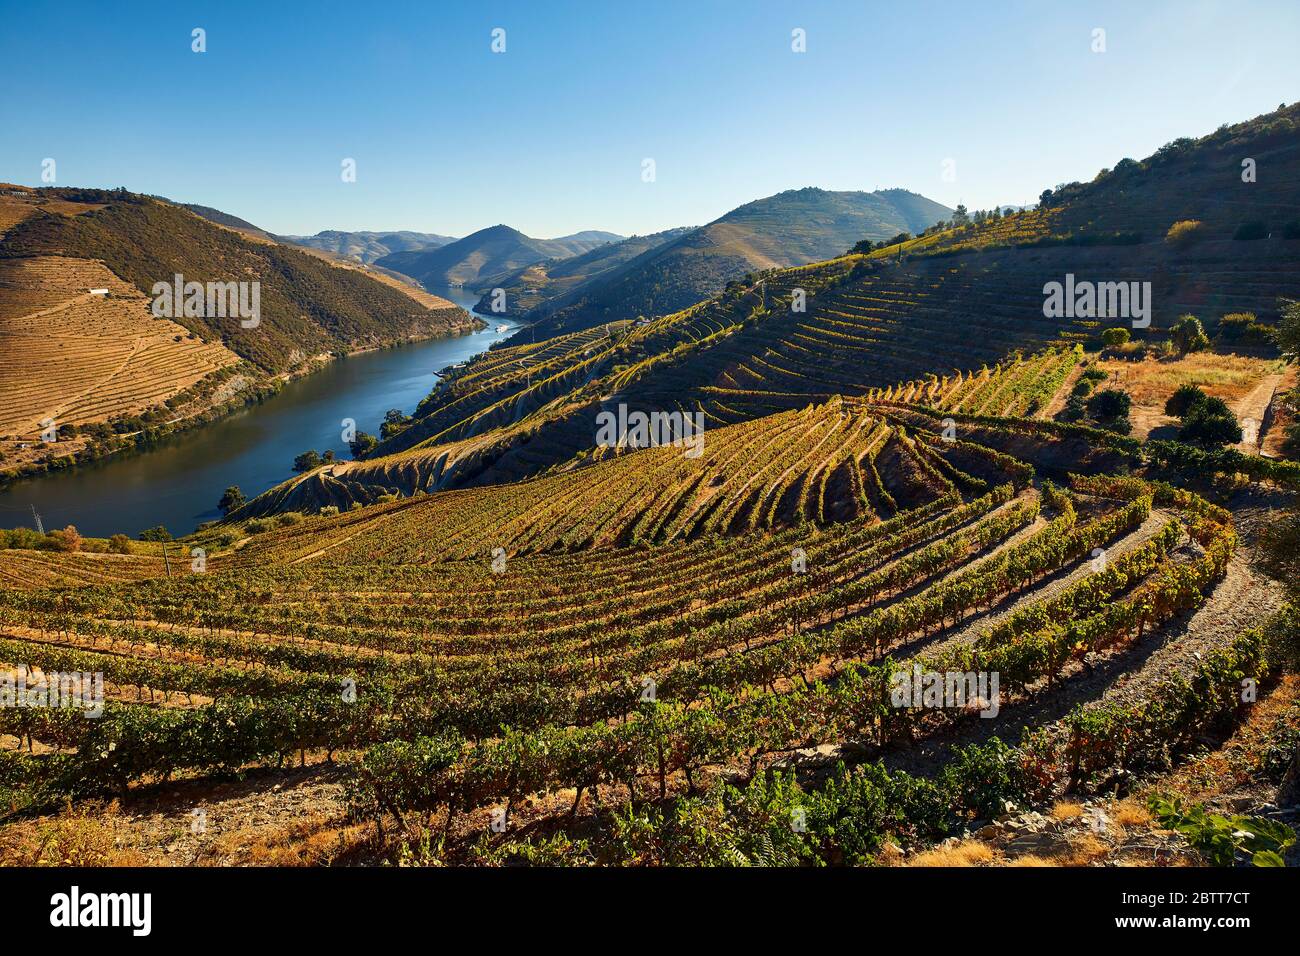 El valle del río Duero, en el norte de Portugal, es el lugar de nacimiento de Port Wine. La región es conocida por sus viñedos, almendros y olivos. Foto de stock